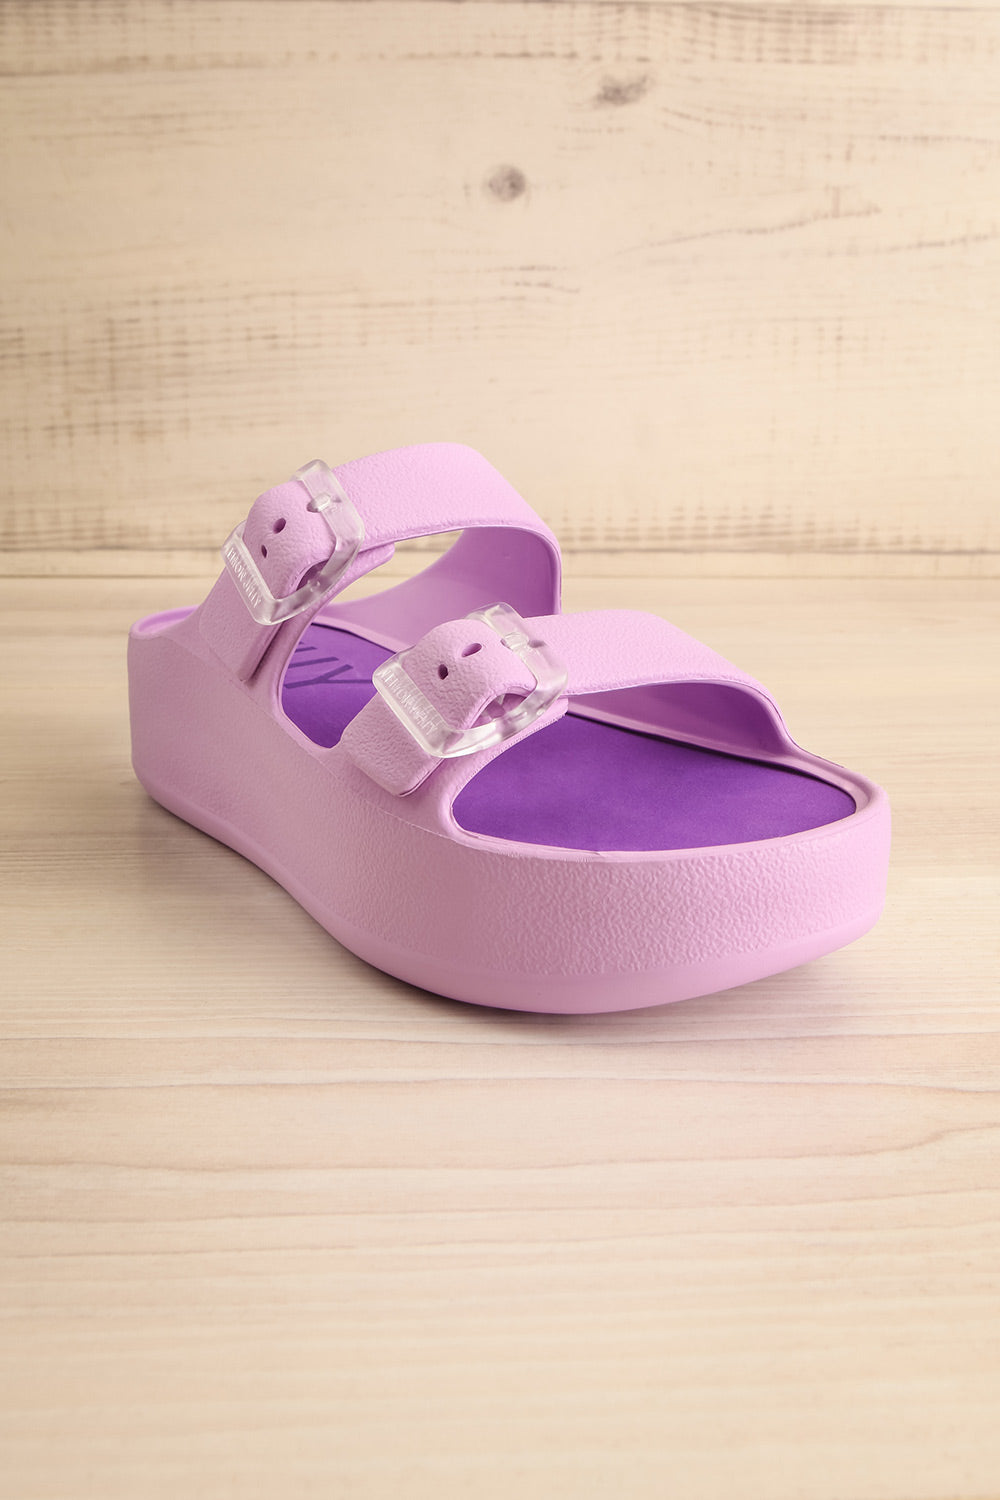 Fenix Lavender Double Buckle Platform Sandals | La petite garçonne front view